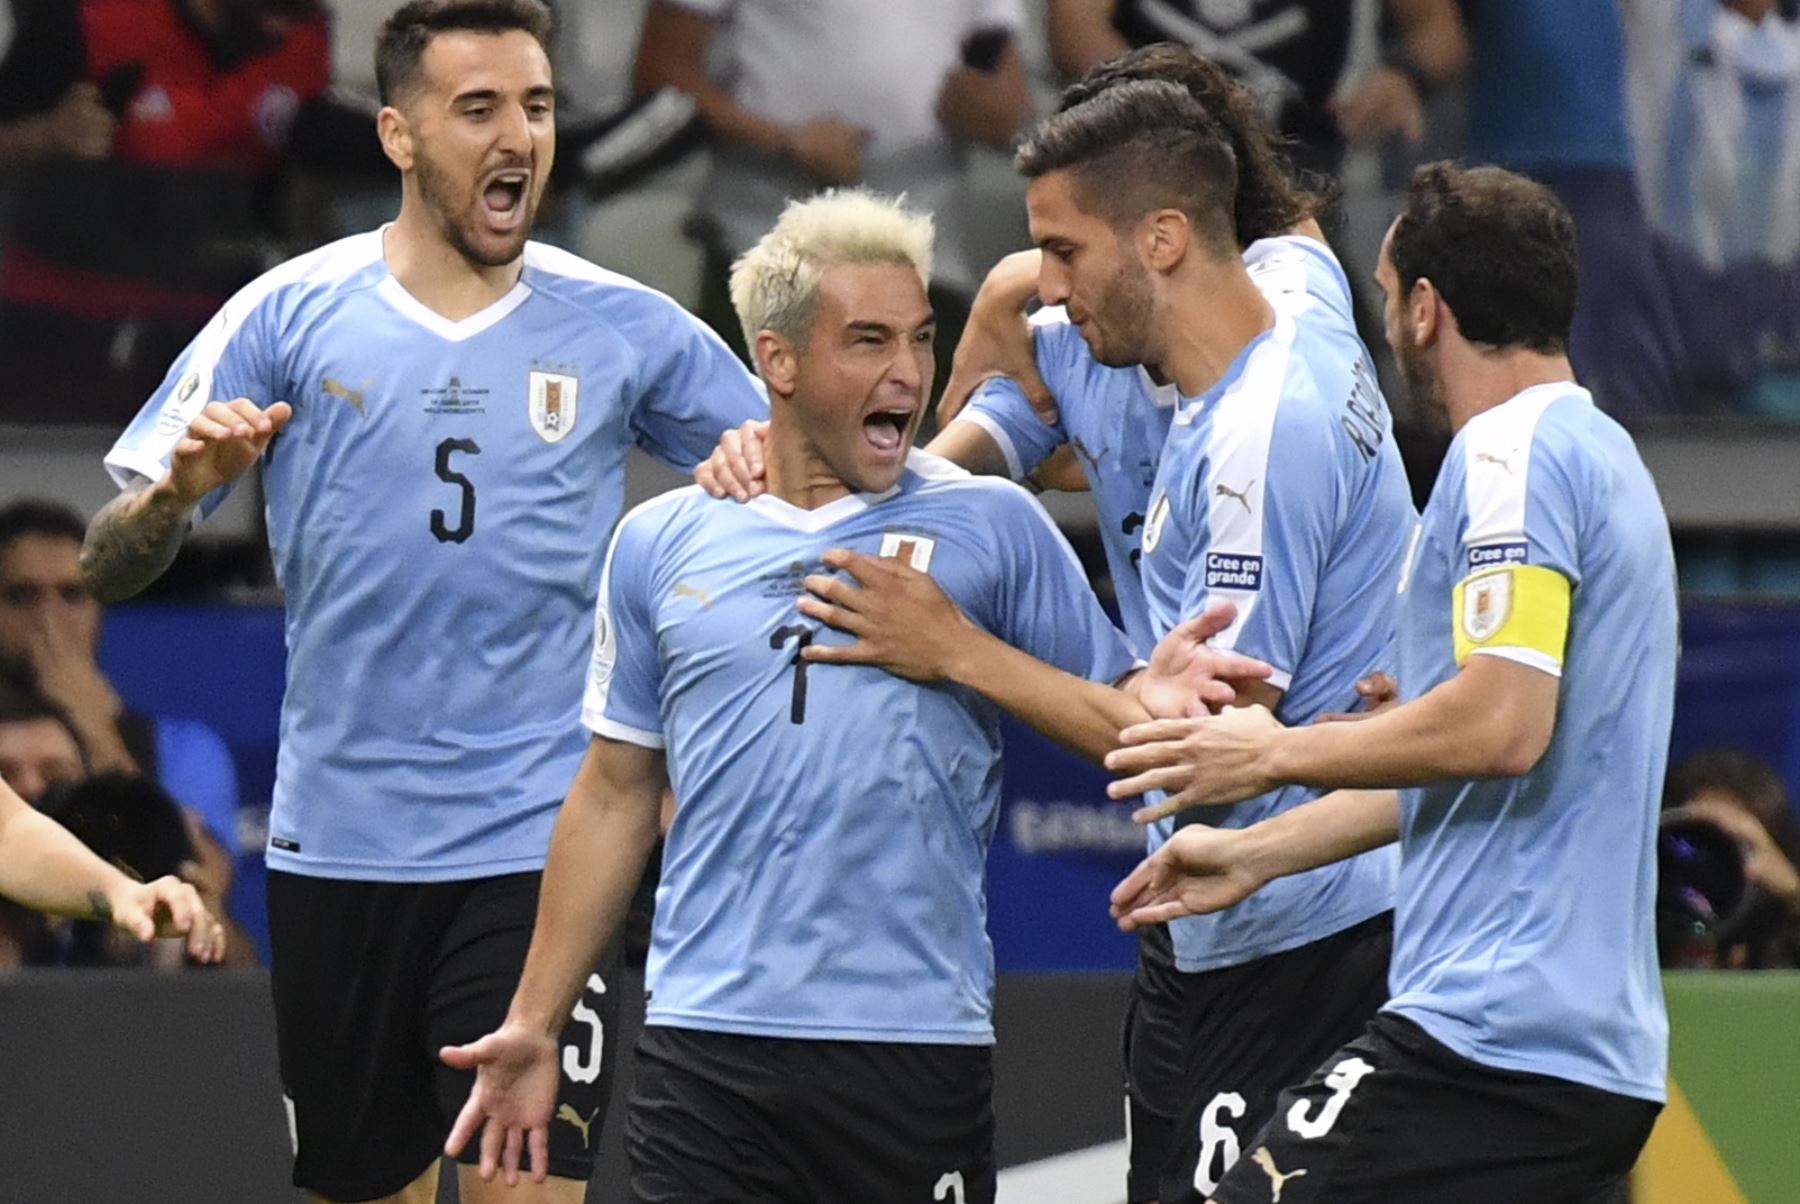 El uruguayo Nicolas Lodeiro (2-L) celebra con sus compañeros de equipo después de marcar contra Ecuador durante su partido de torneo de fútbol de la Copa América en el Estadio Mineirao en Belo Horizonte, Brasil.Foto:AFP